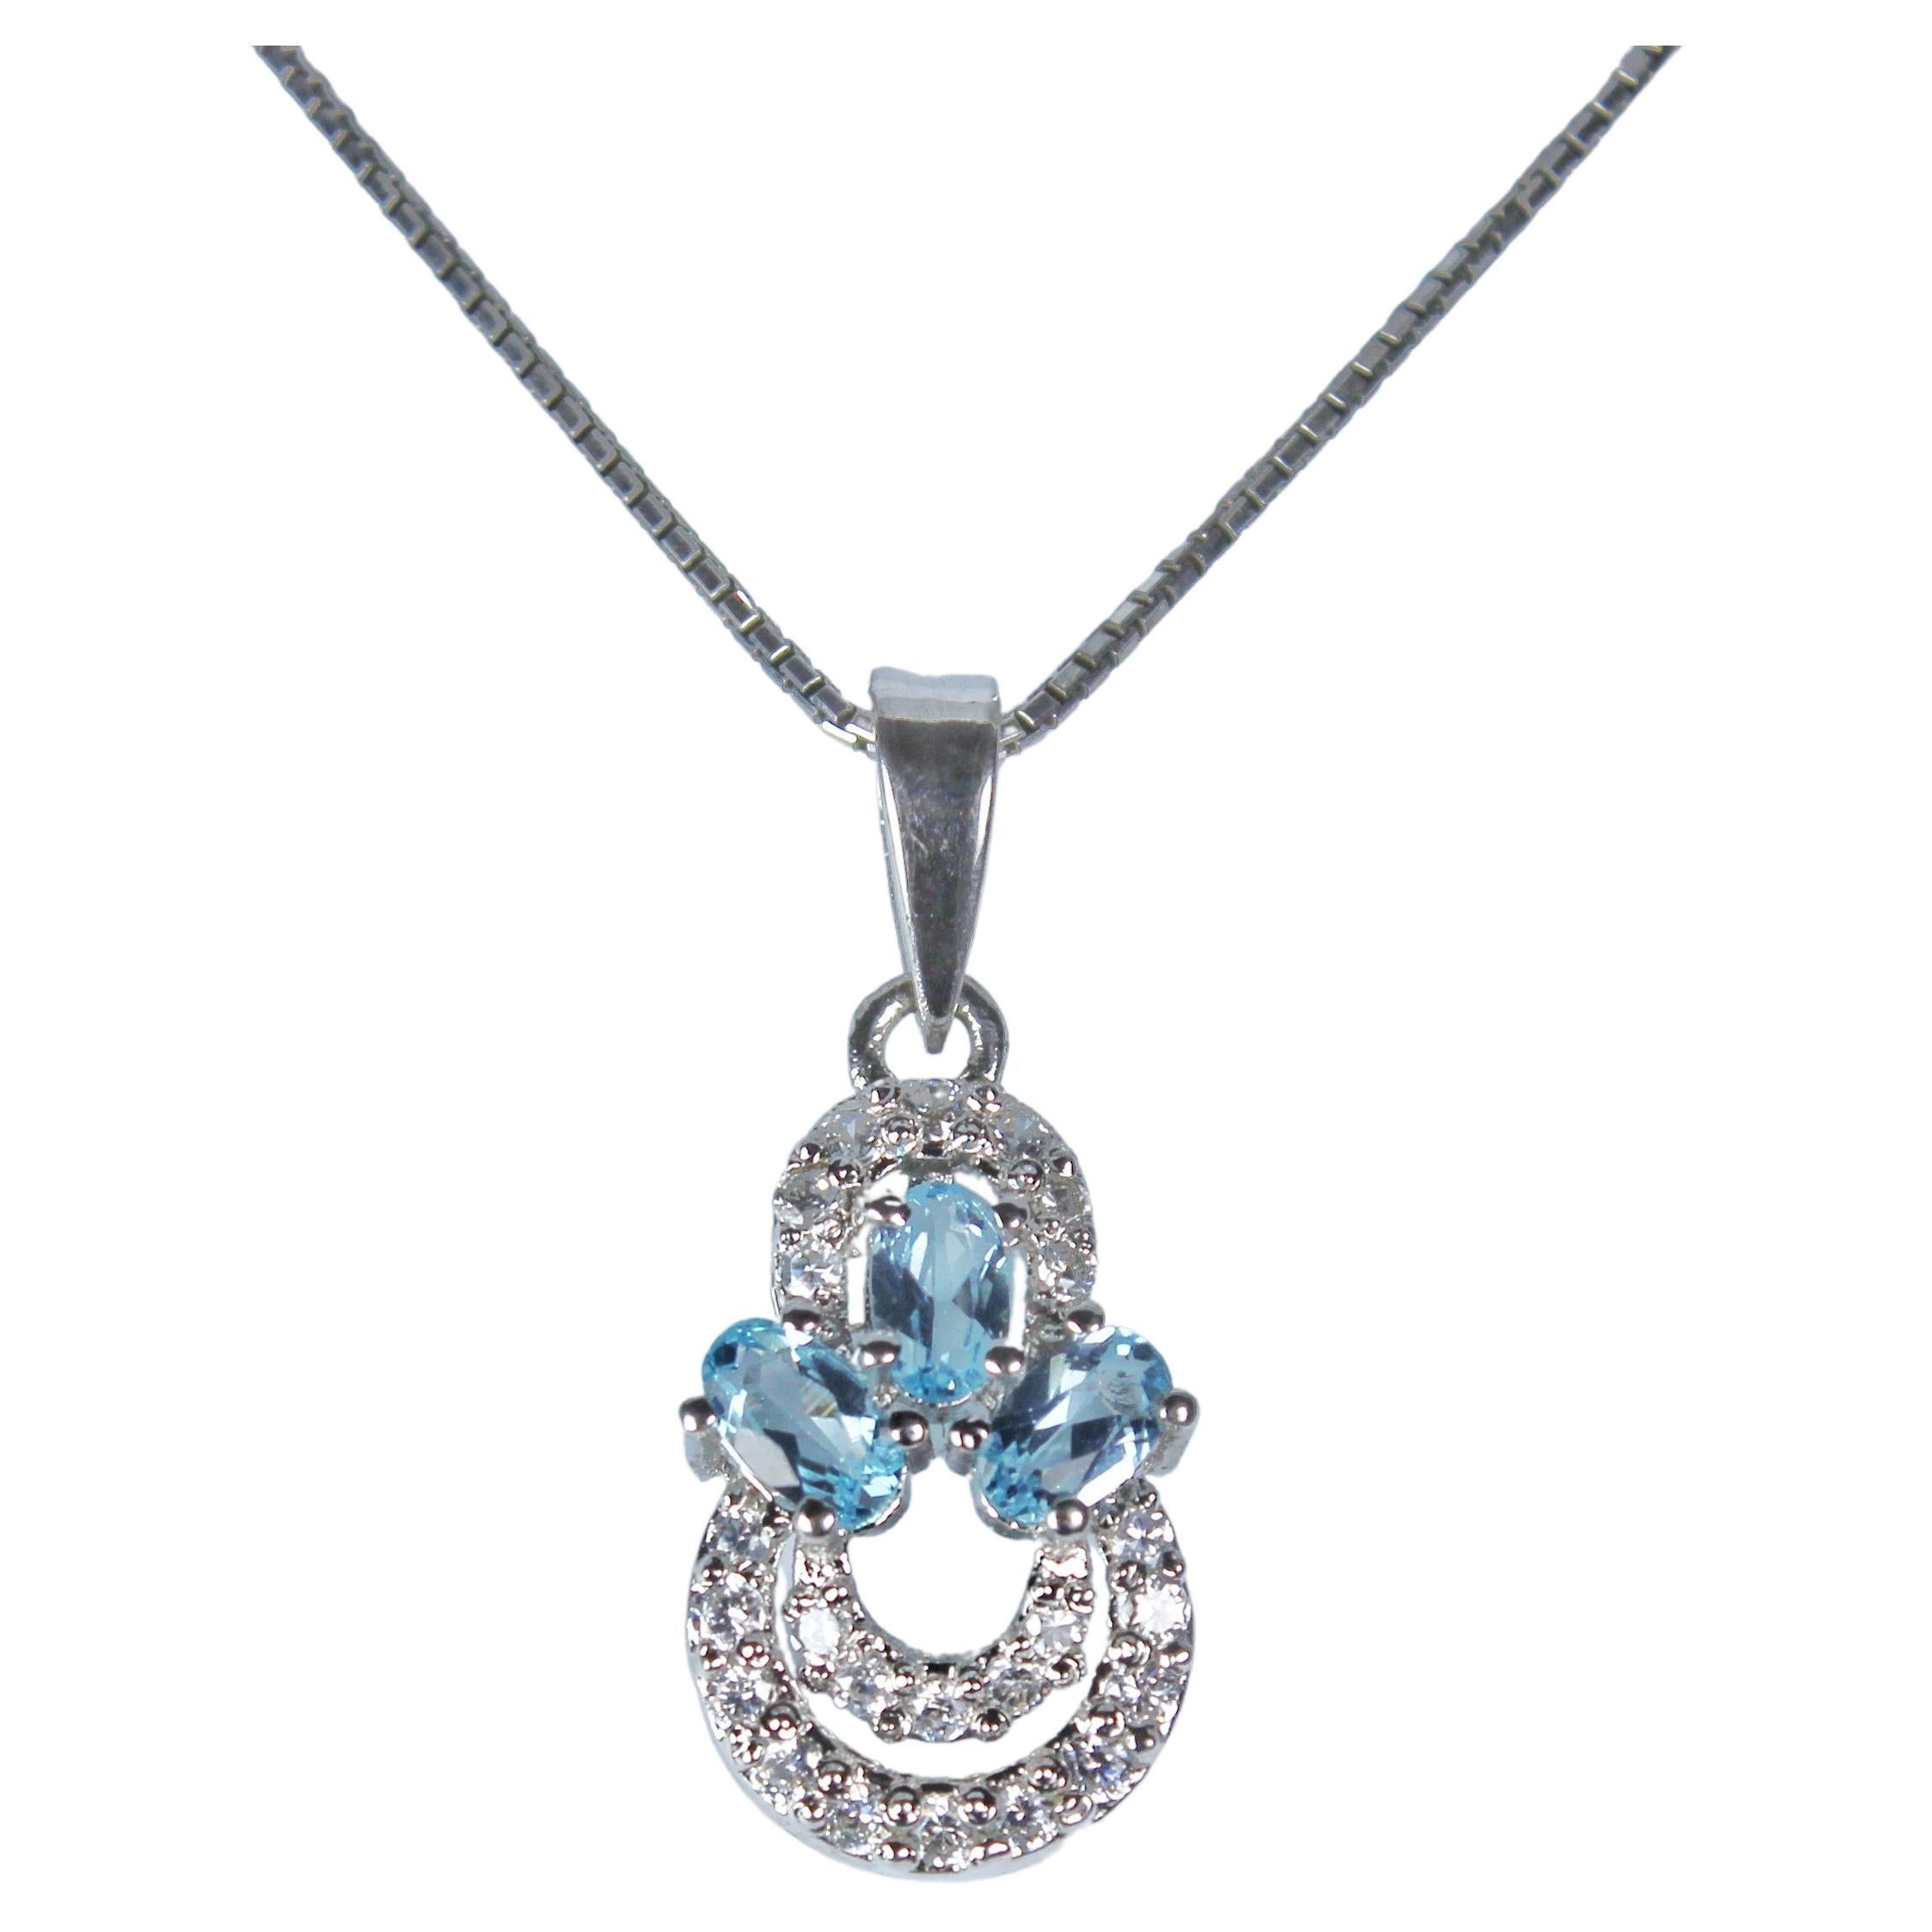 Pendant with Natural Aquamarine Gemstones